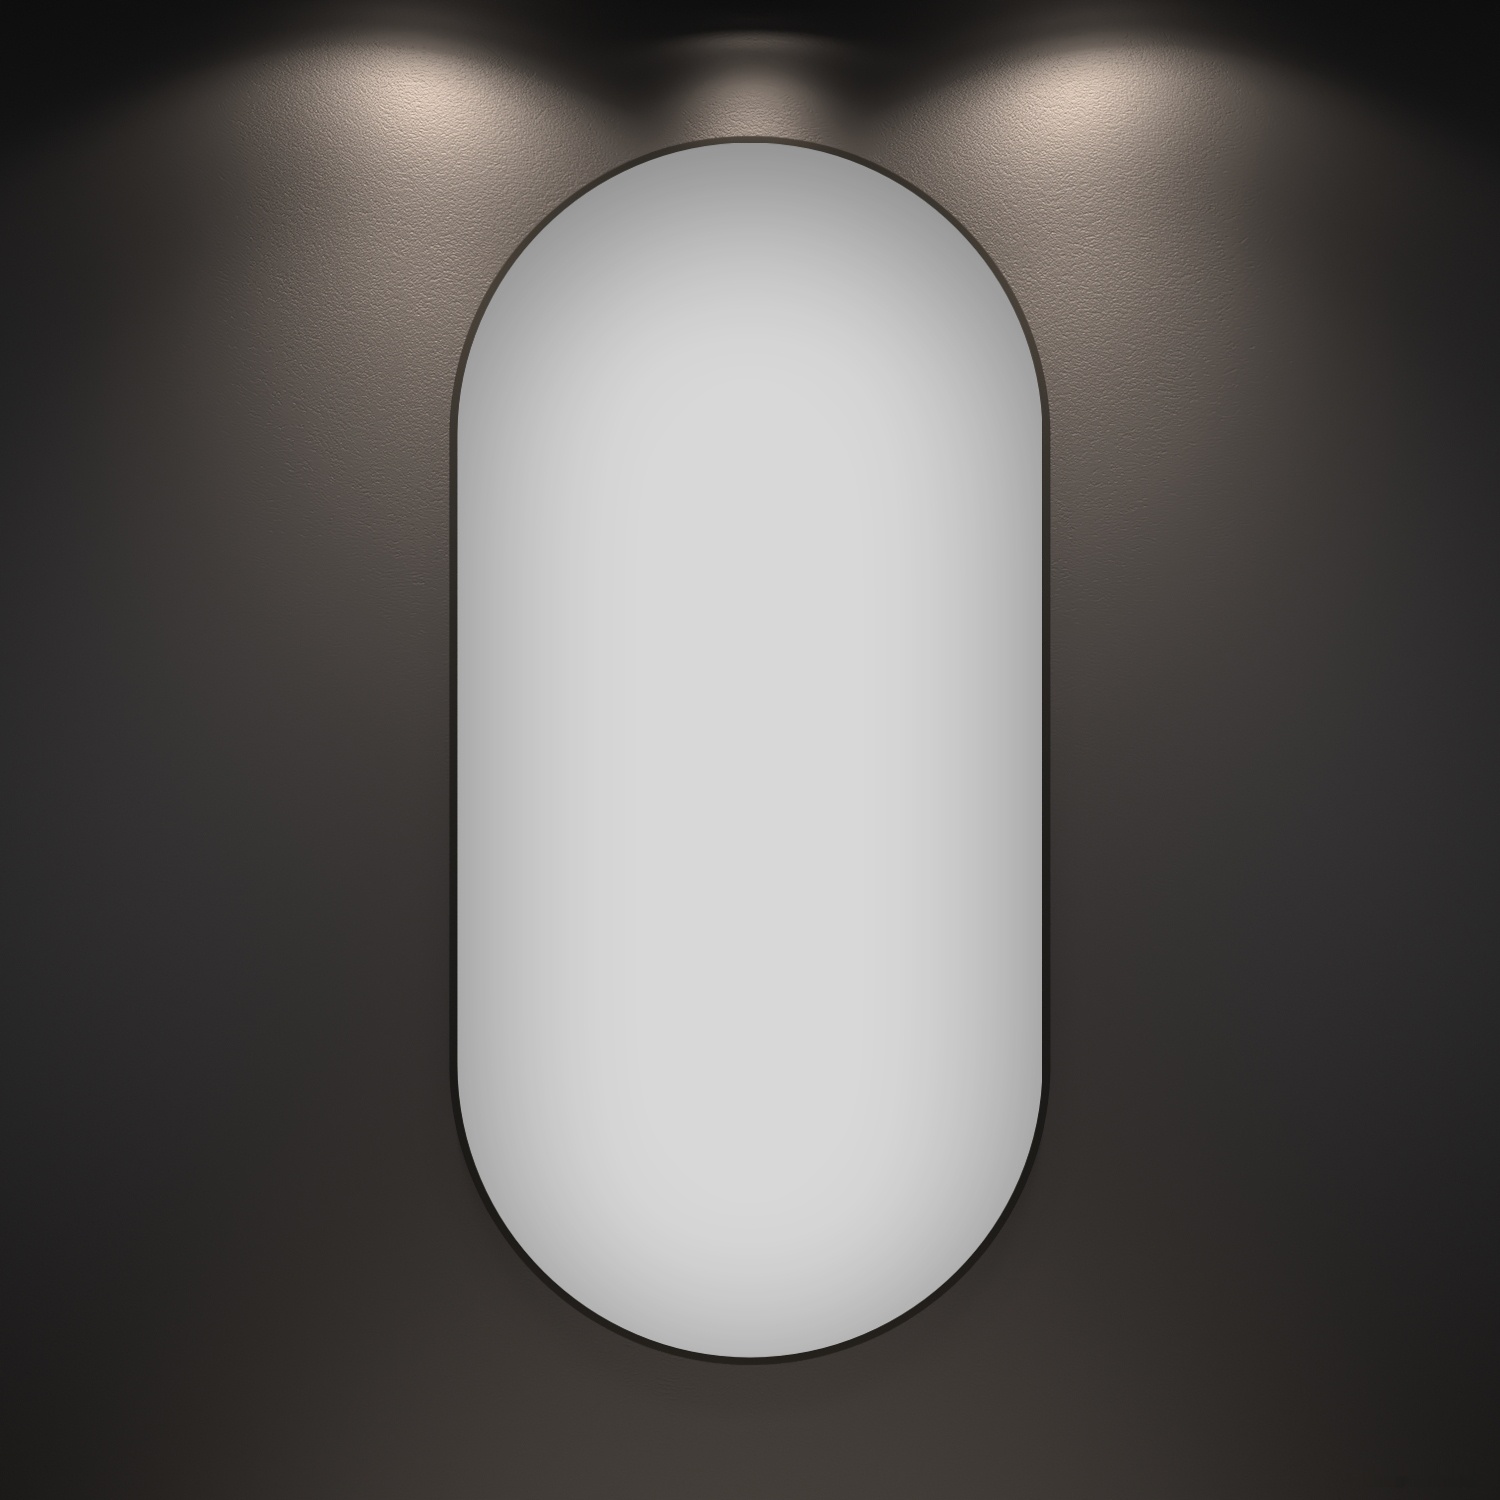 зеркало wellsee зеркало 7 rays' spectrum 172201850, 55 x 110 см